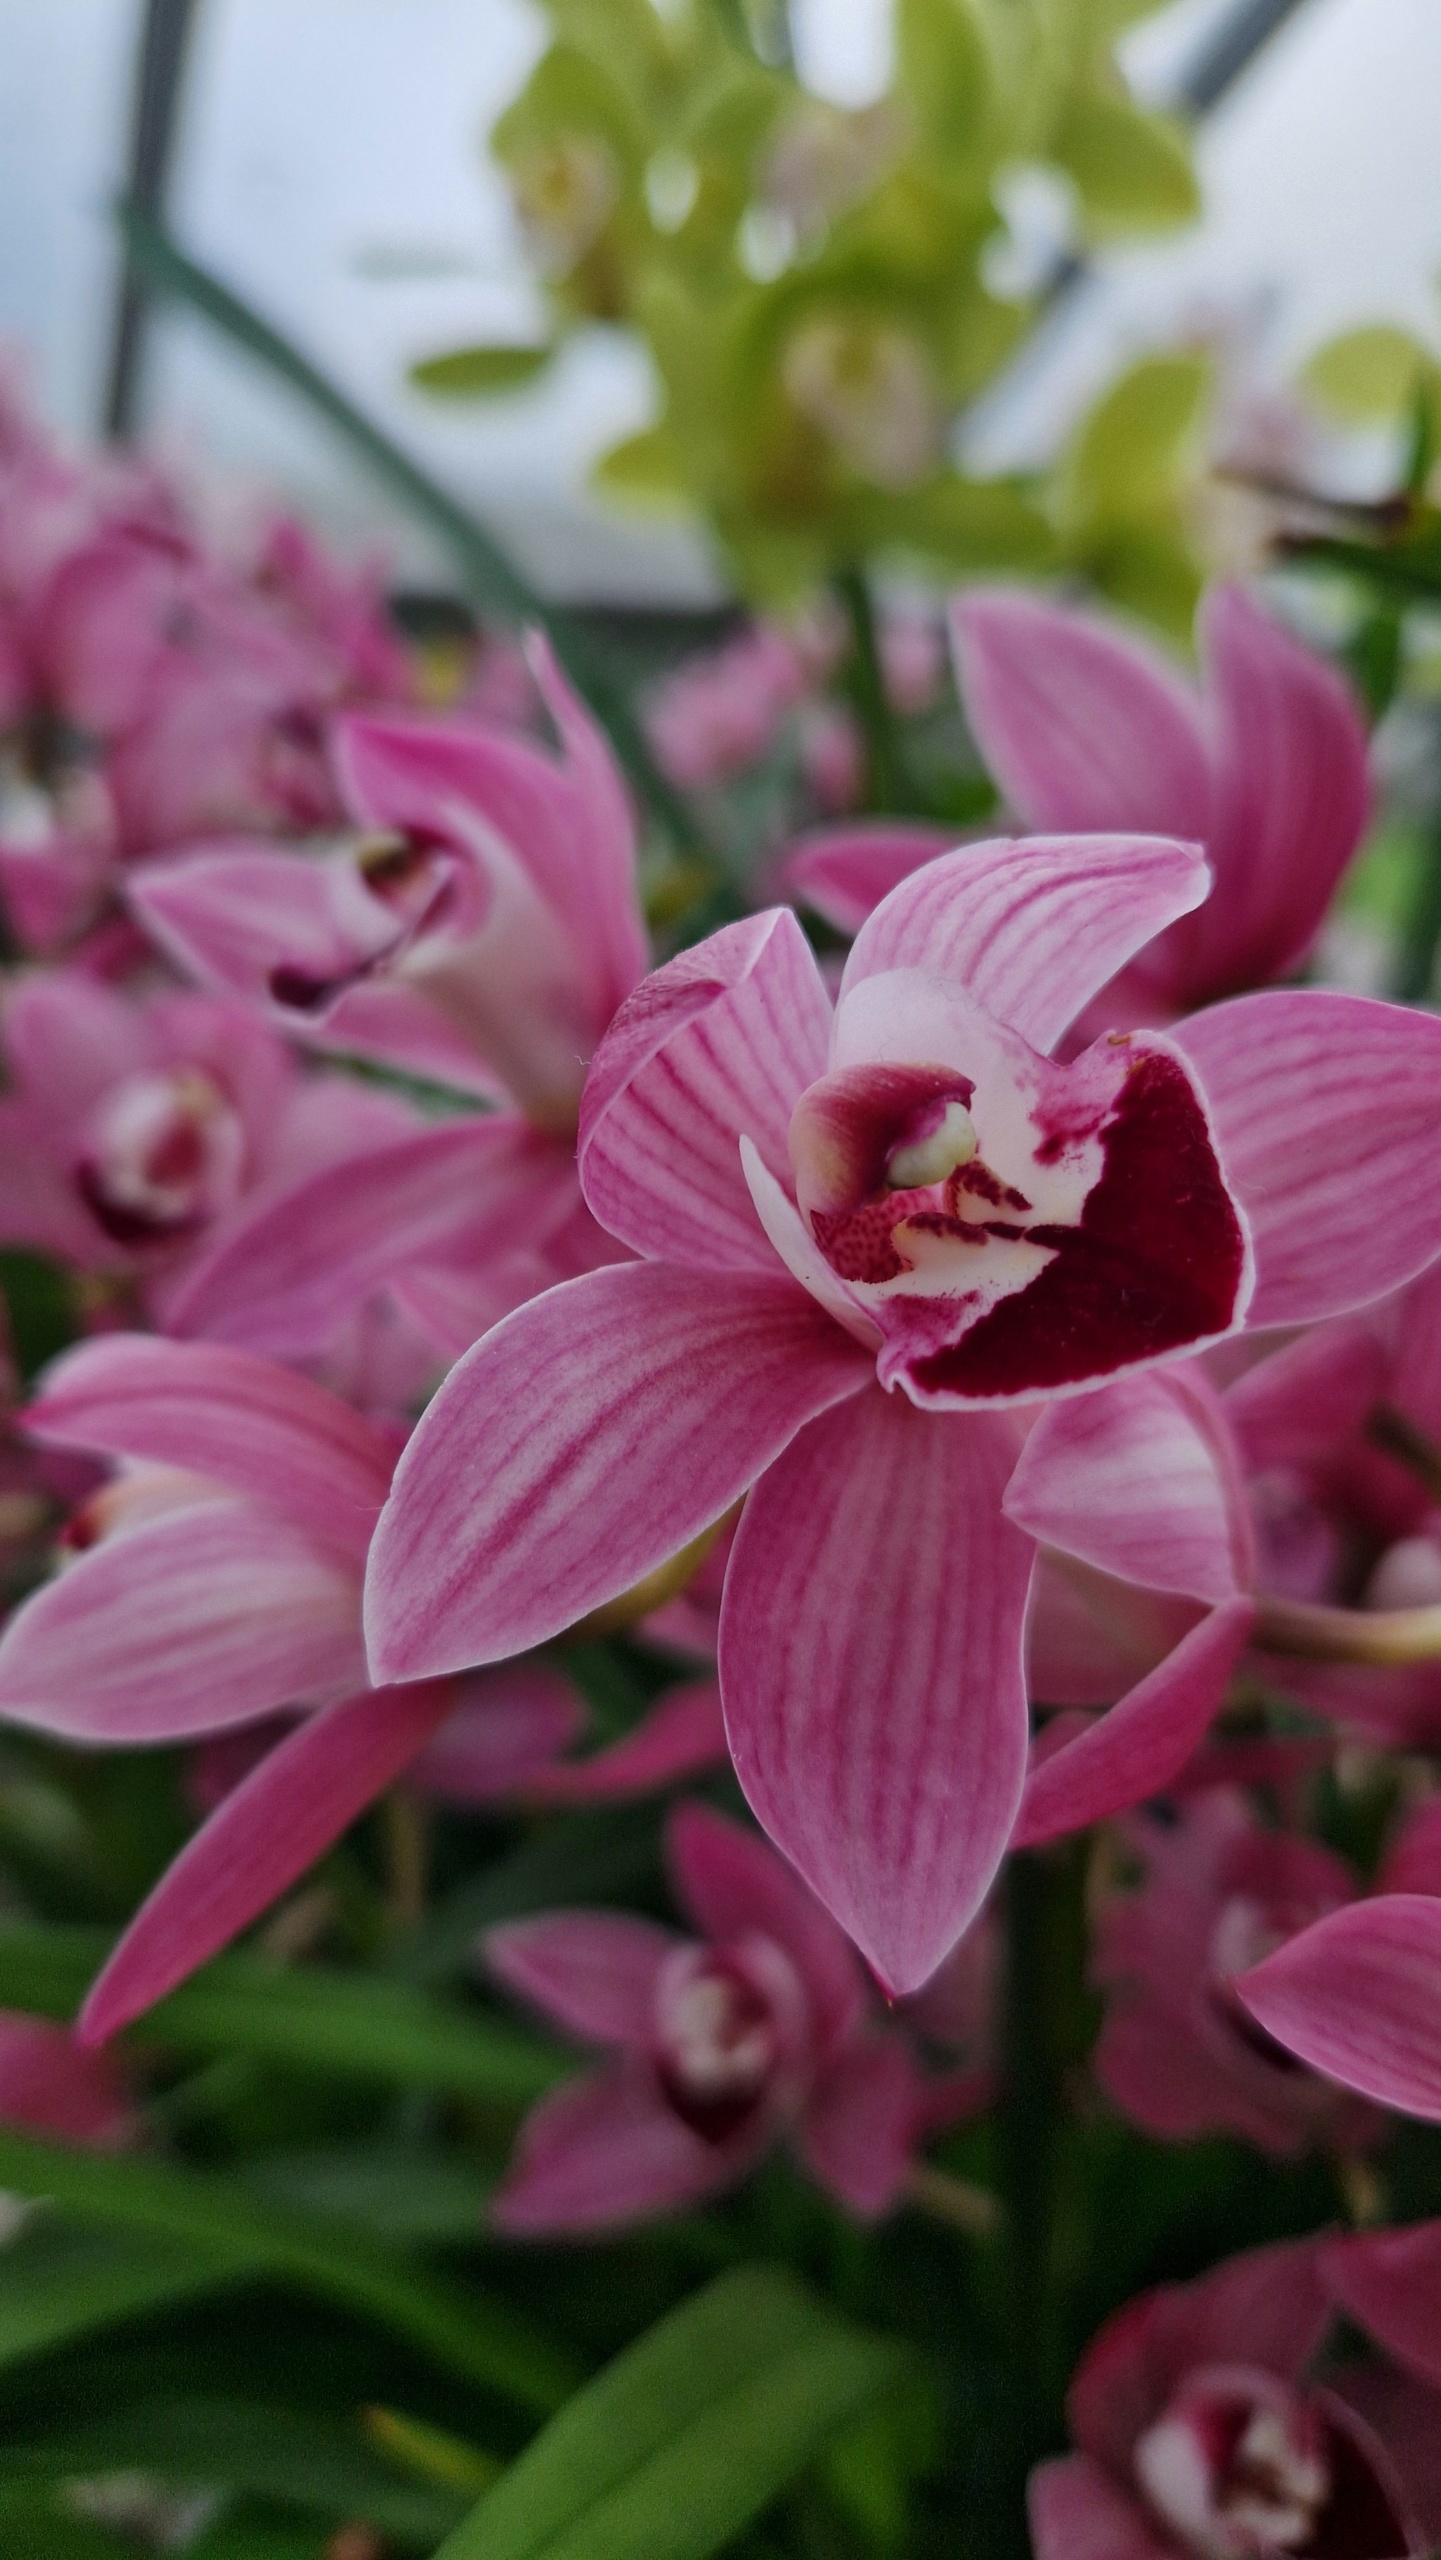 Orchideafesztivál a londoni Kew Gardensben